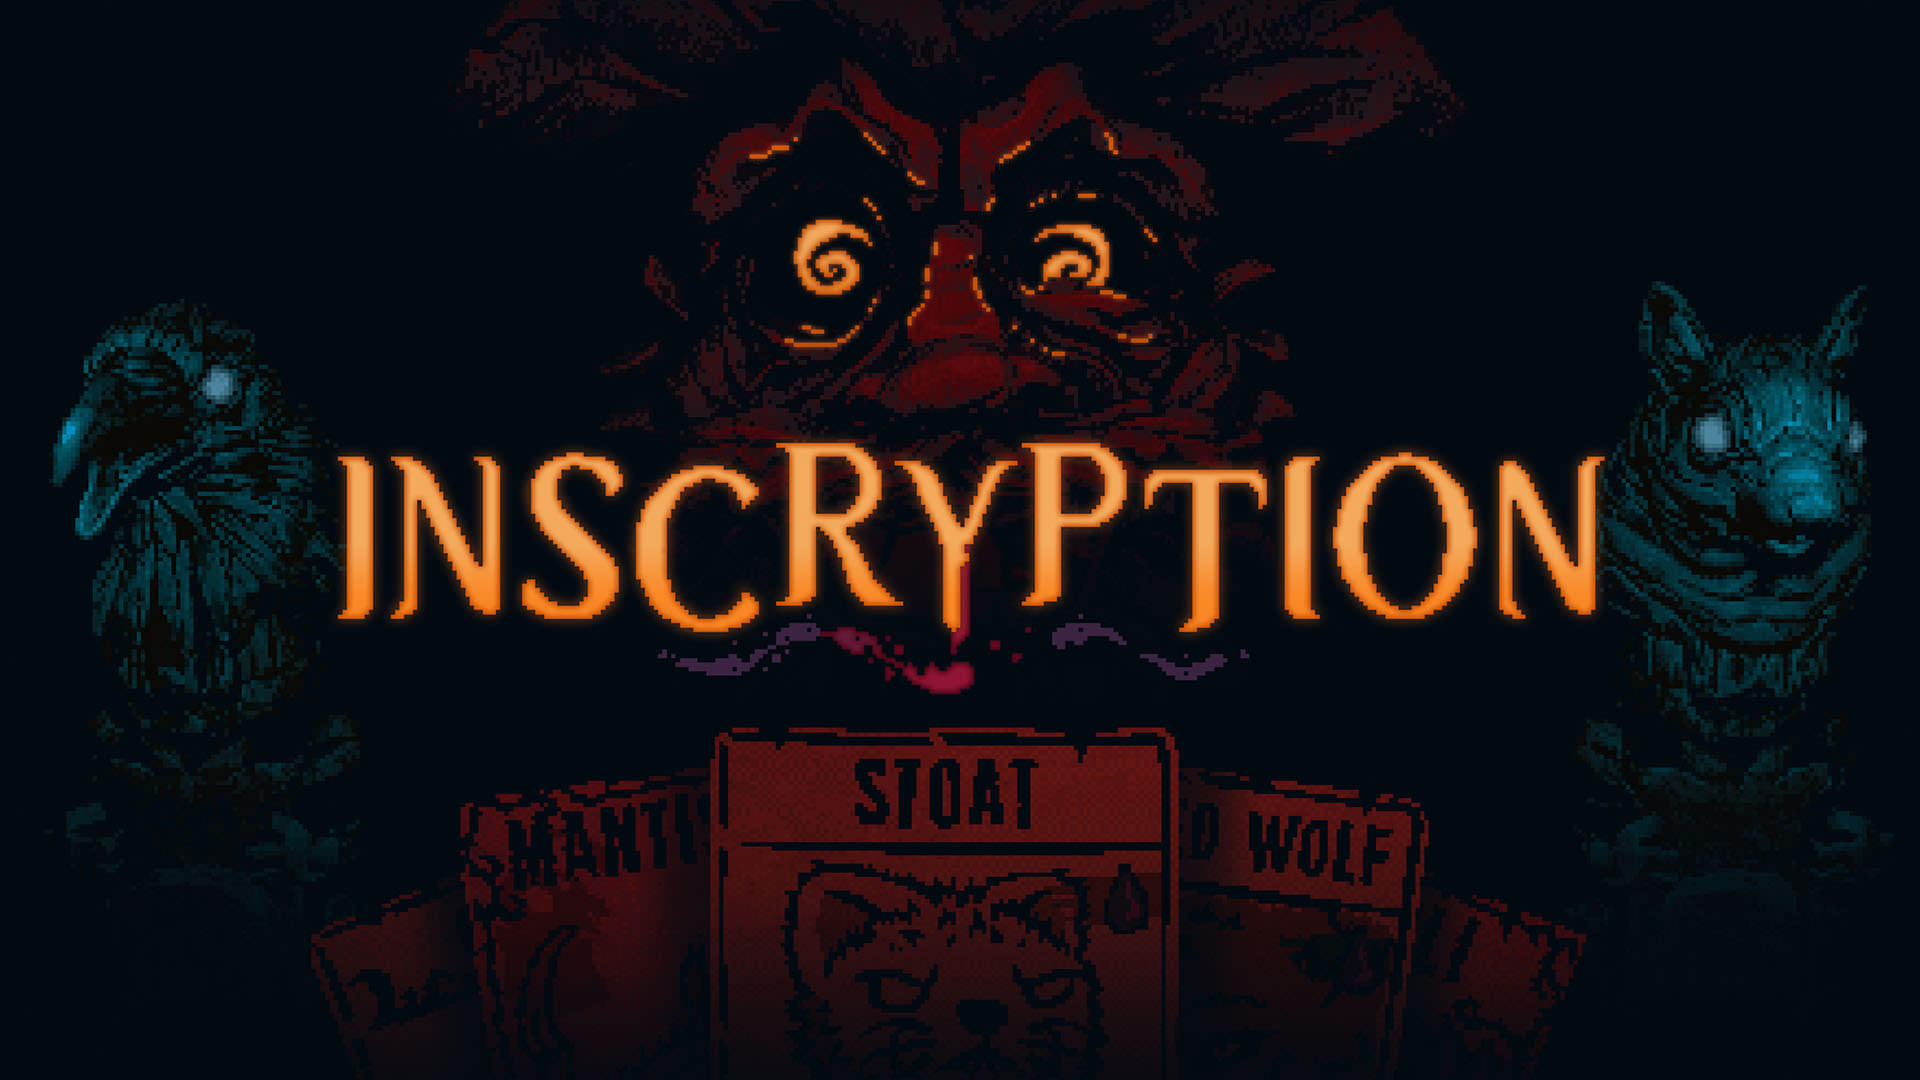 احتمال عرضه نسخه پلی استیشن 4 بازی Inscryption